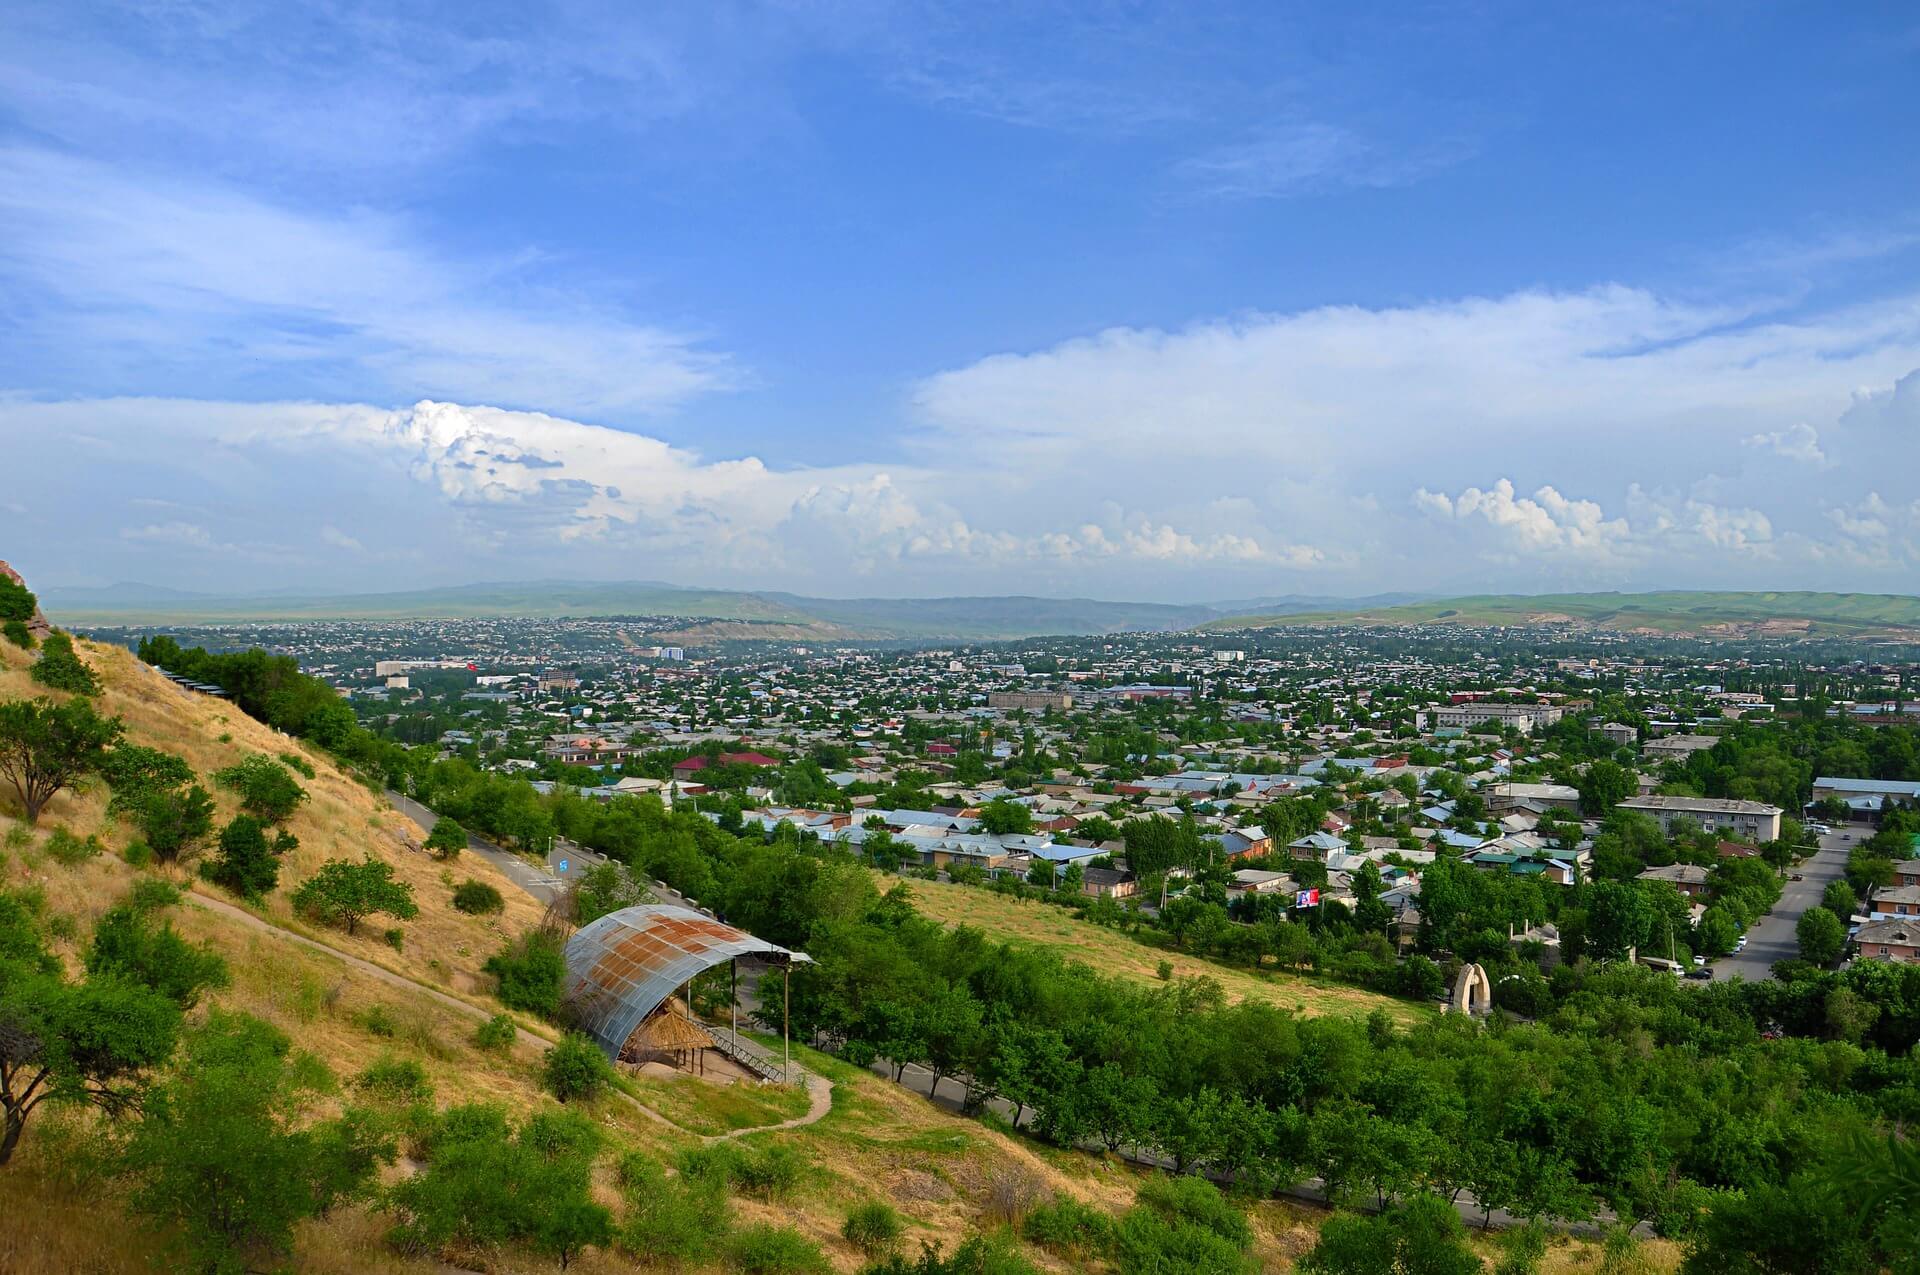 Osh, Kyrgyzstan